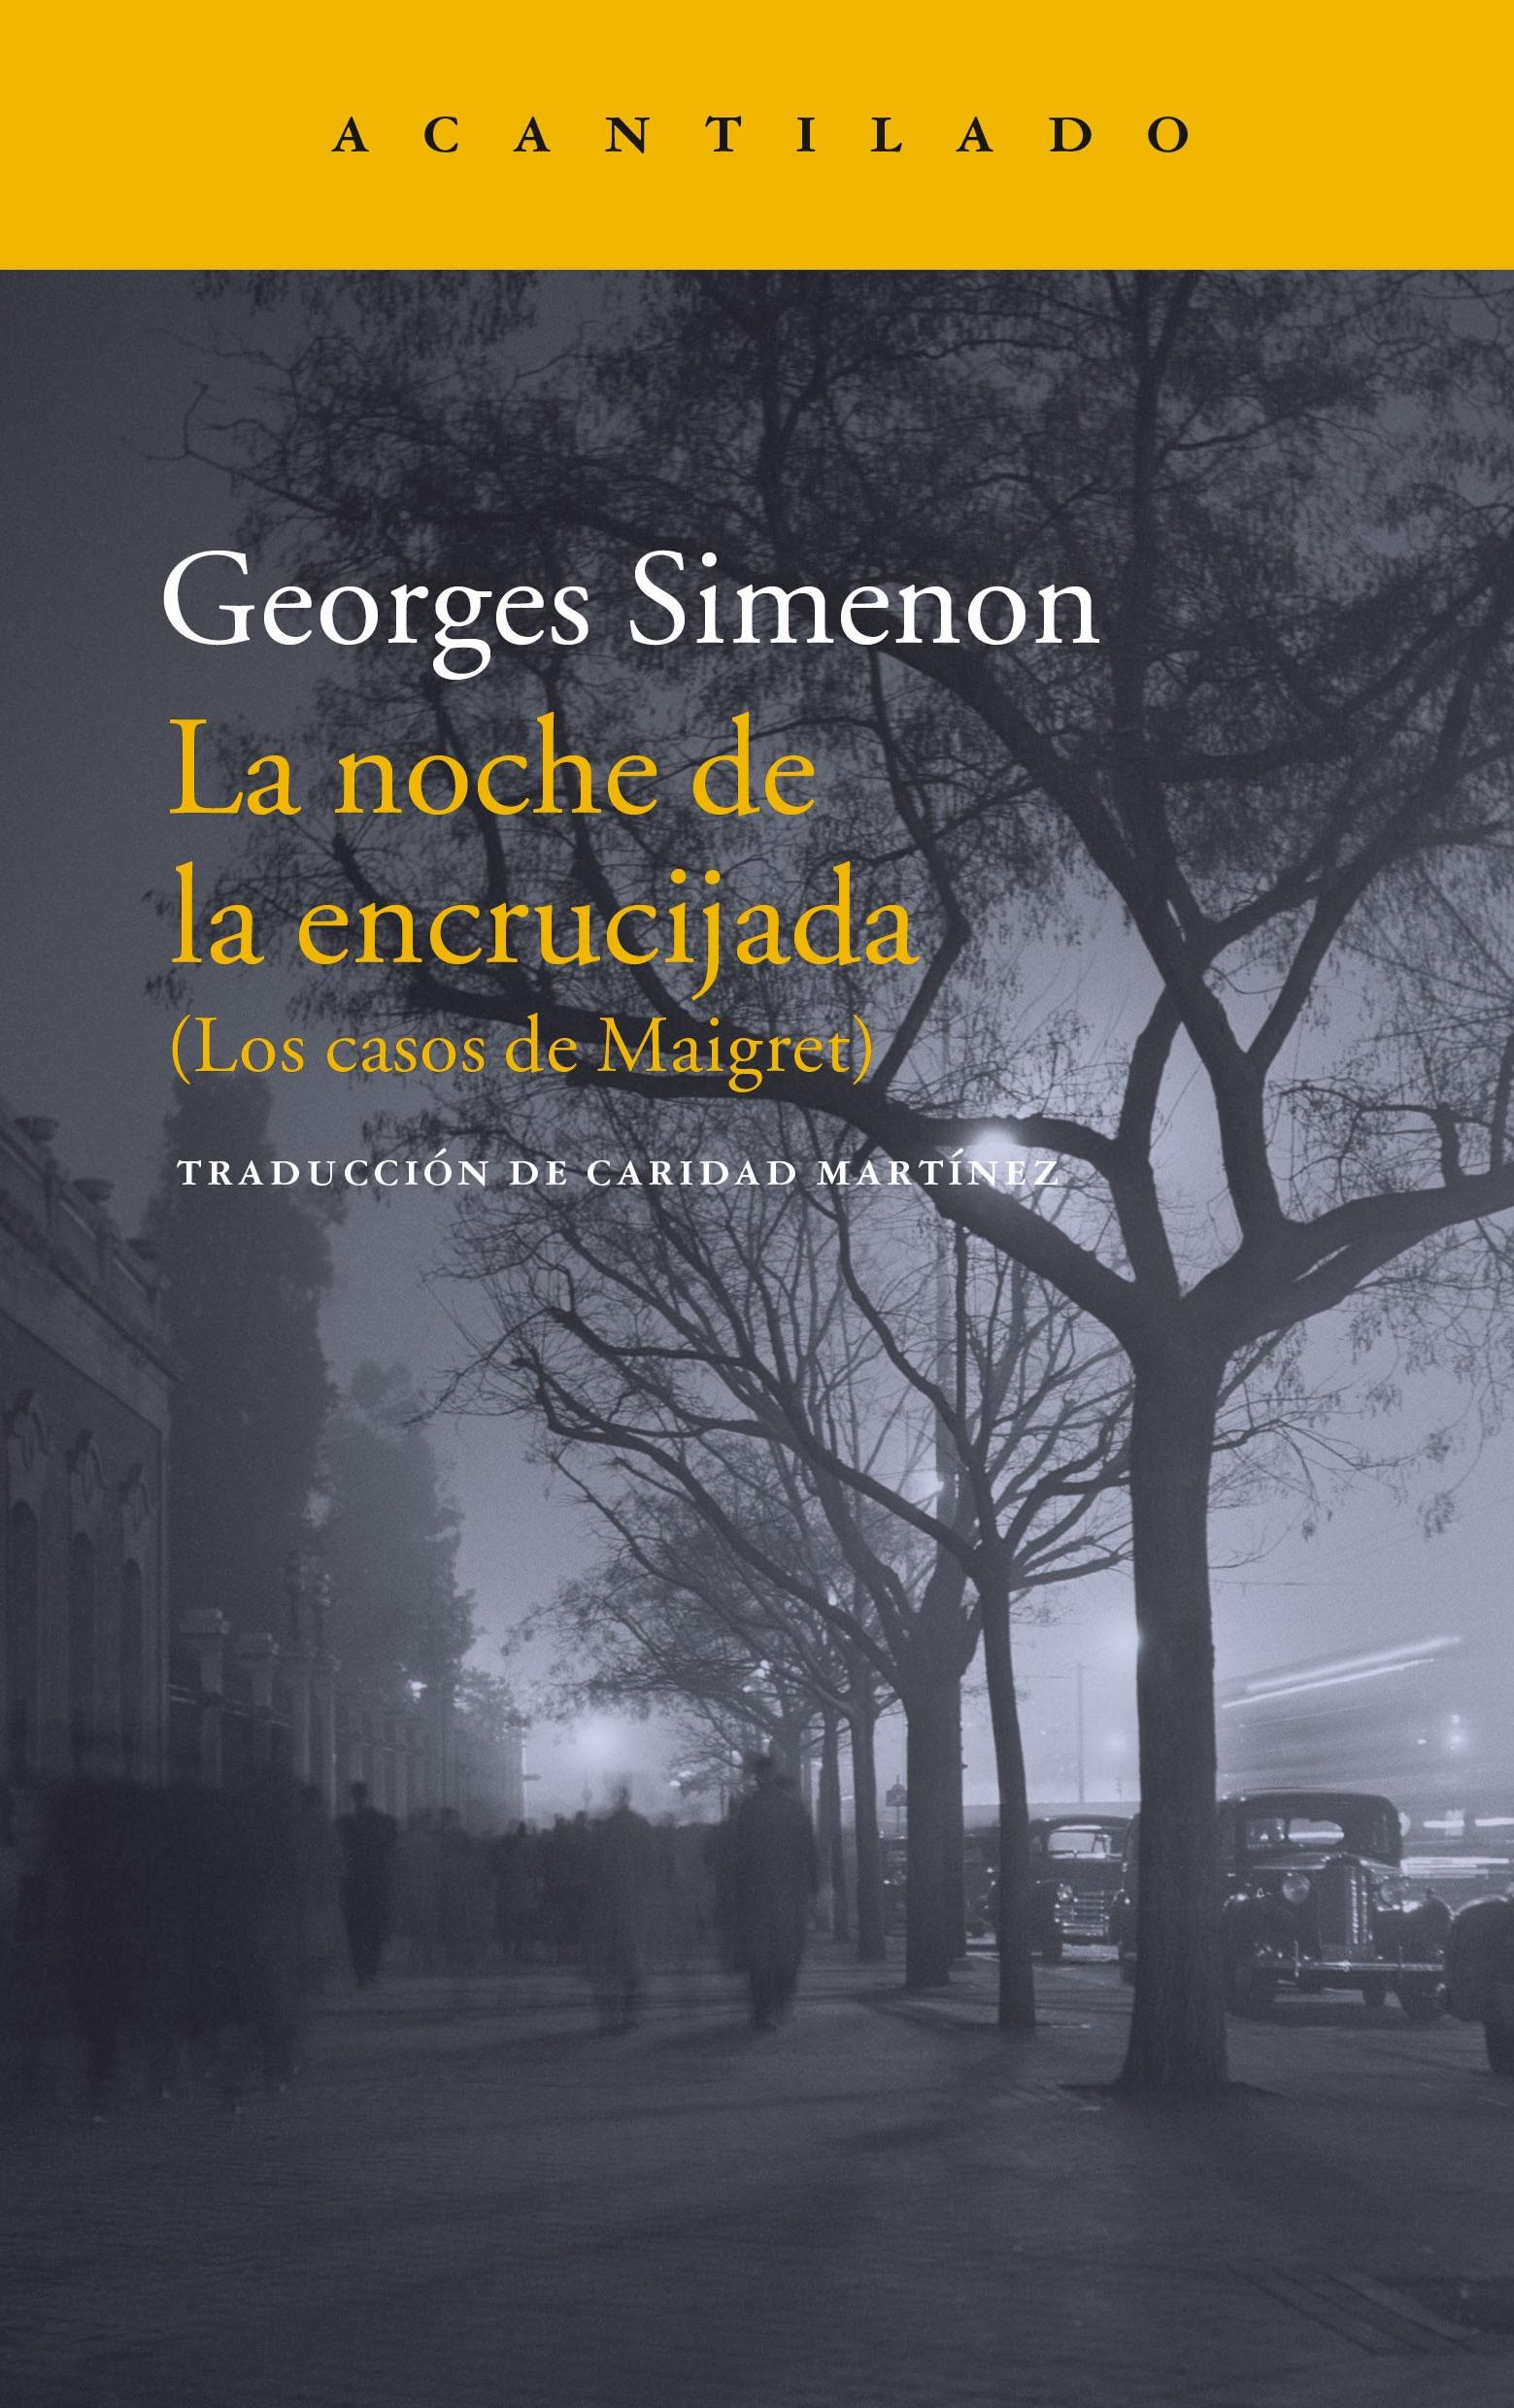 Noche de la encrucijada, La "Los casos de Maigret"